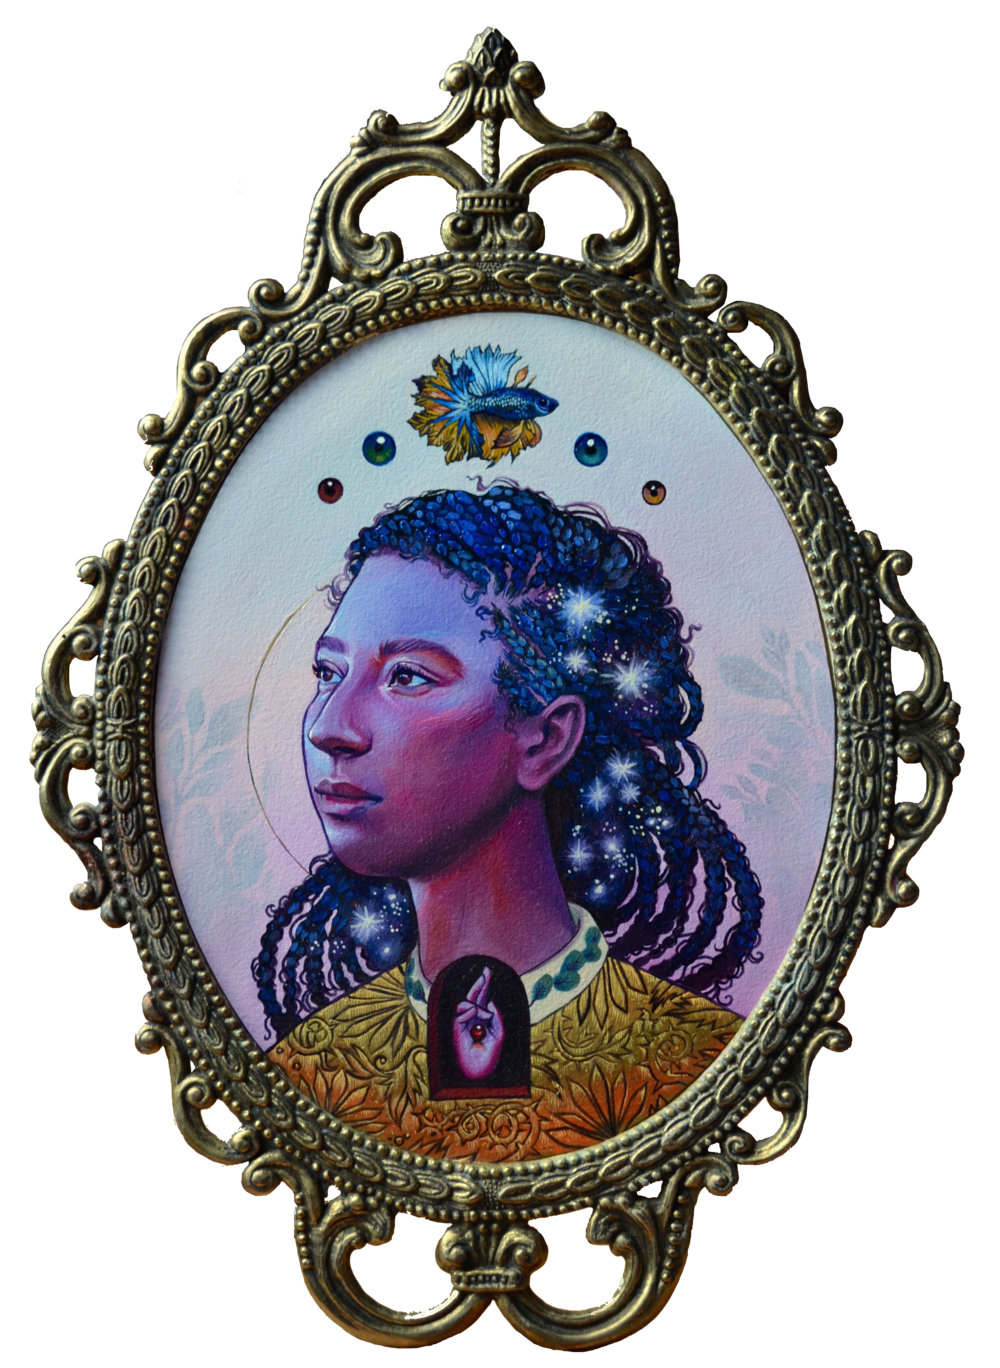 Dans un cadre ovale, portrait d'une femme, cheveux tressés et regard au loin. Un poisson et des pupilles sont peints au-dessus d'elle